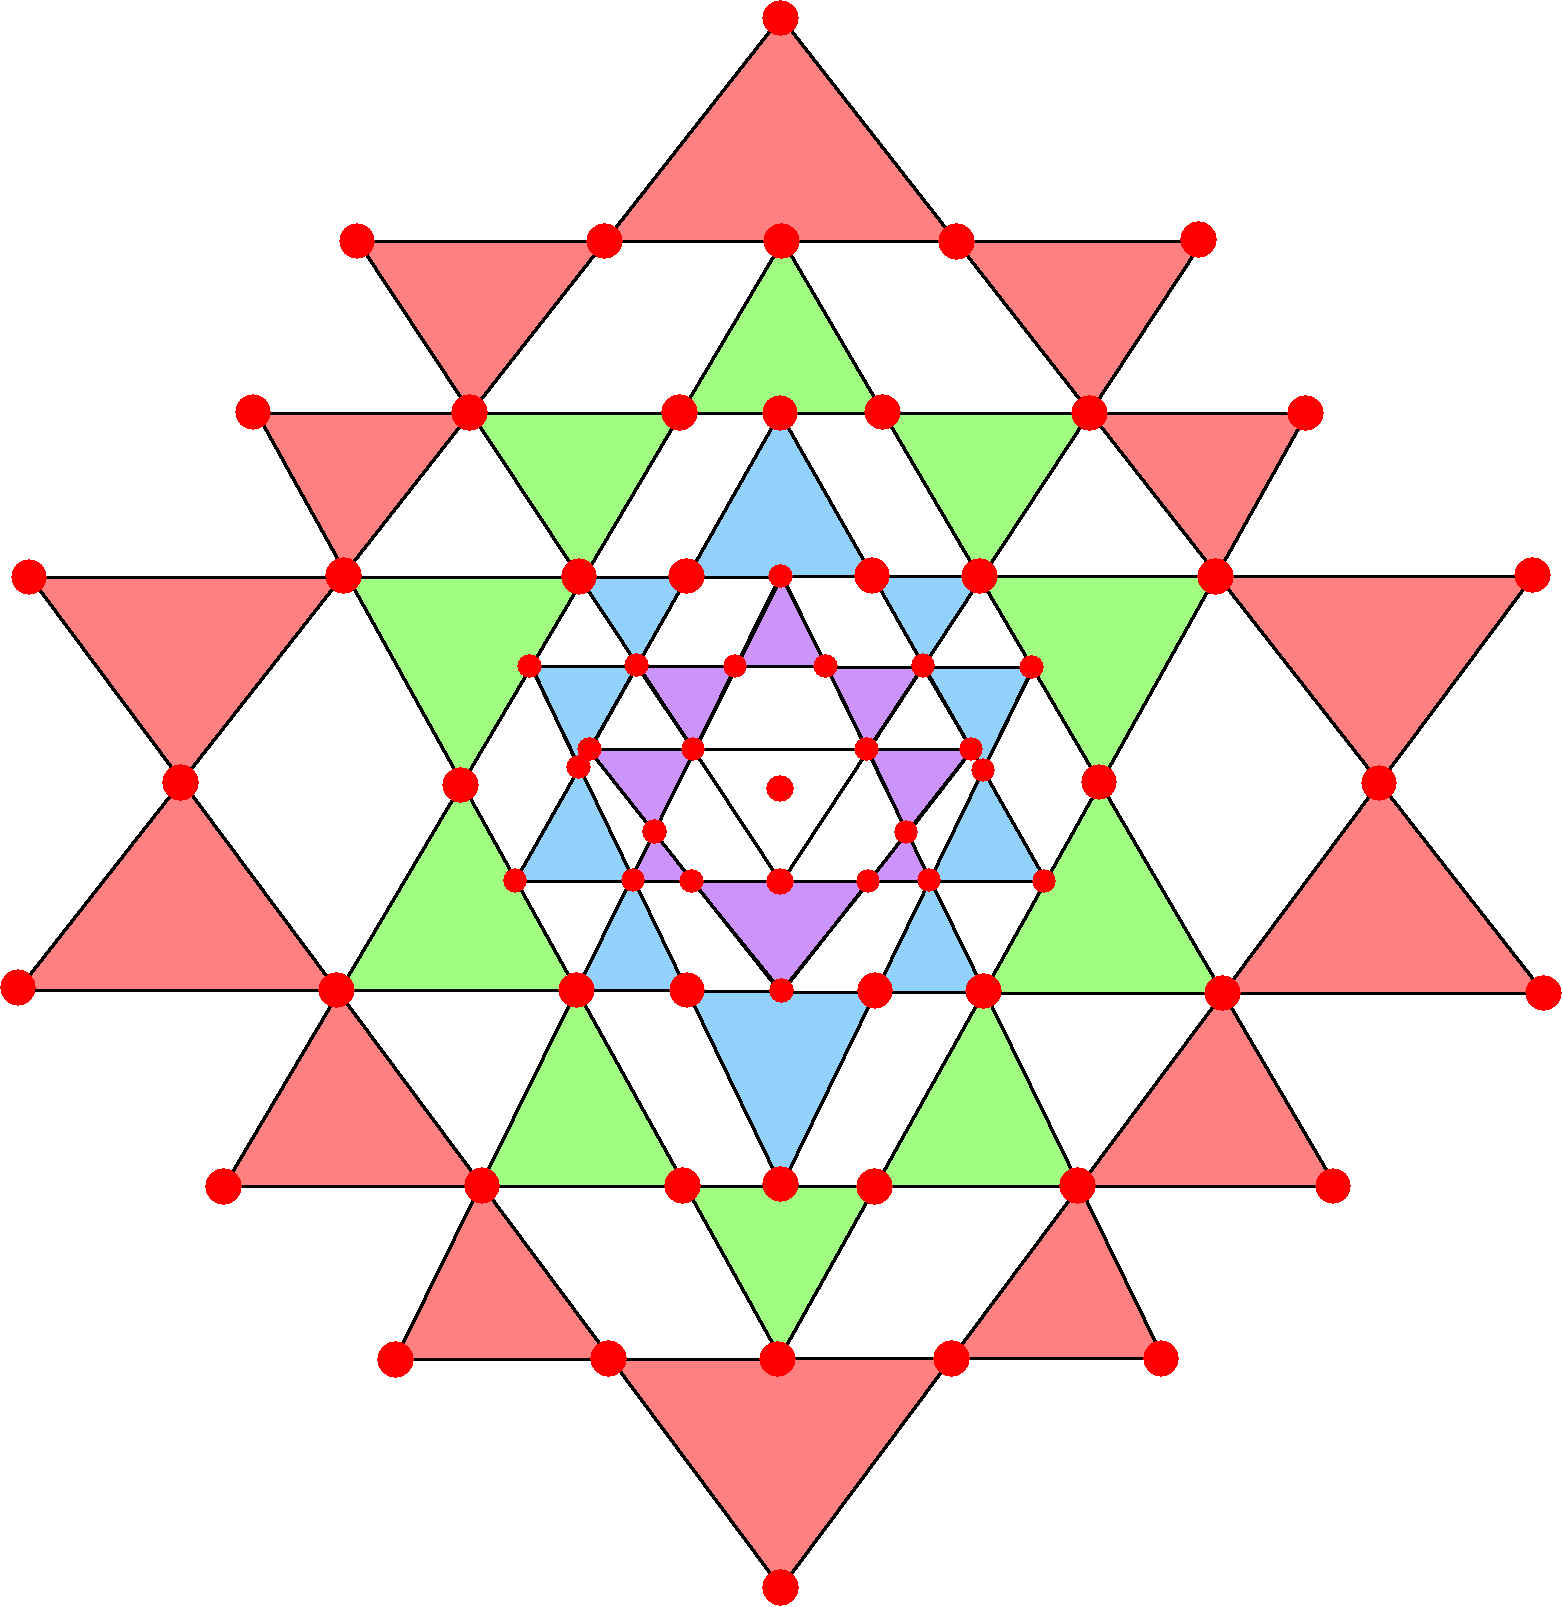 70 corners of 43 triangles in 2-d Sri Yantra